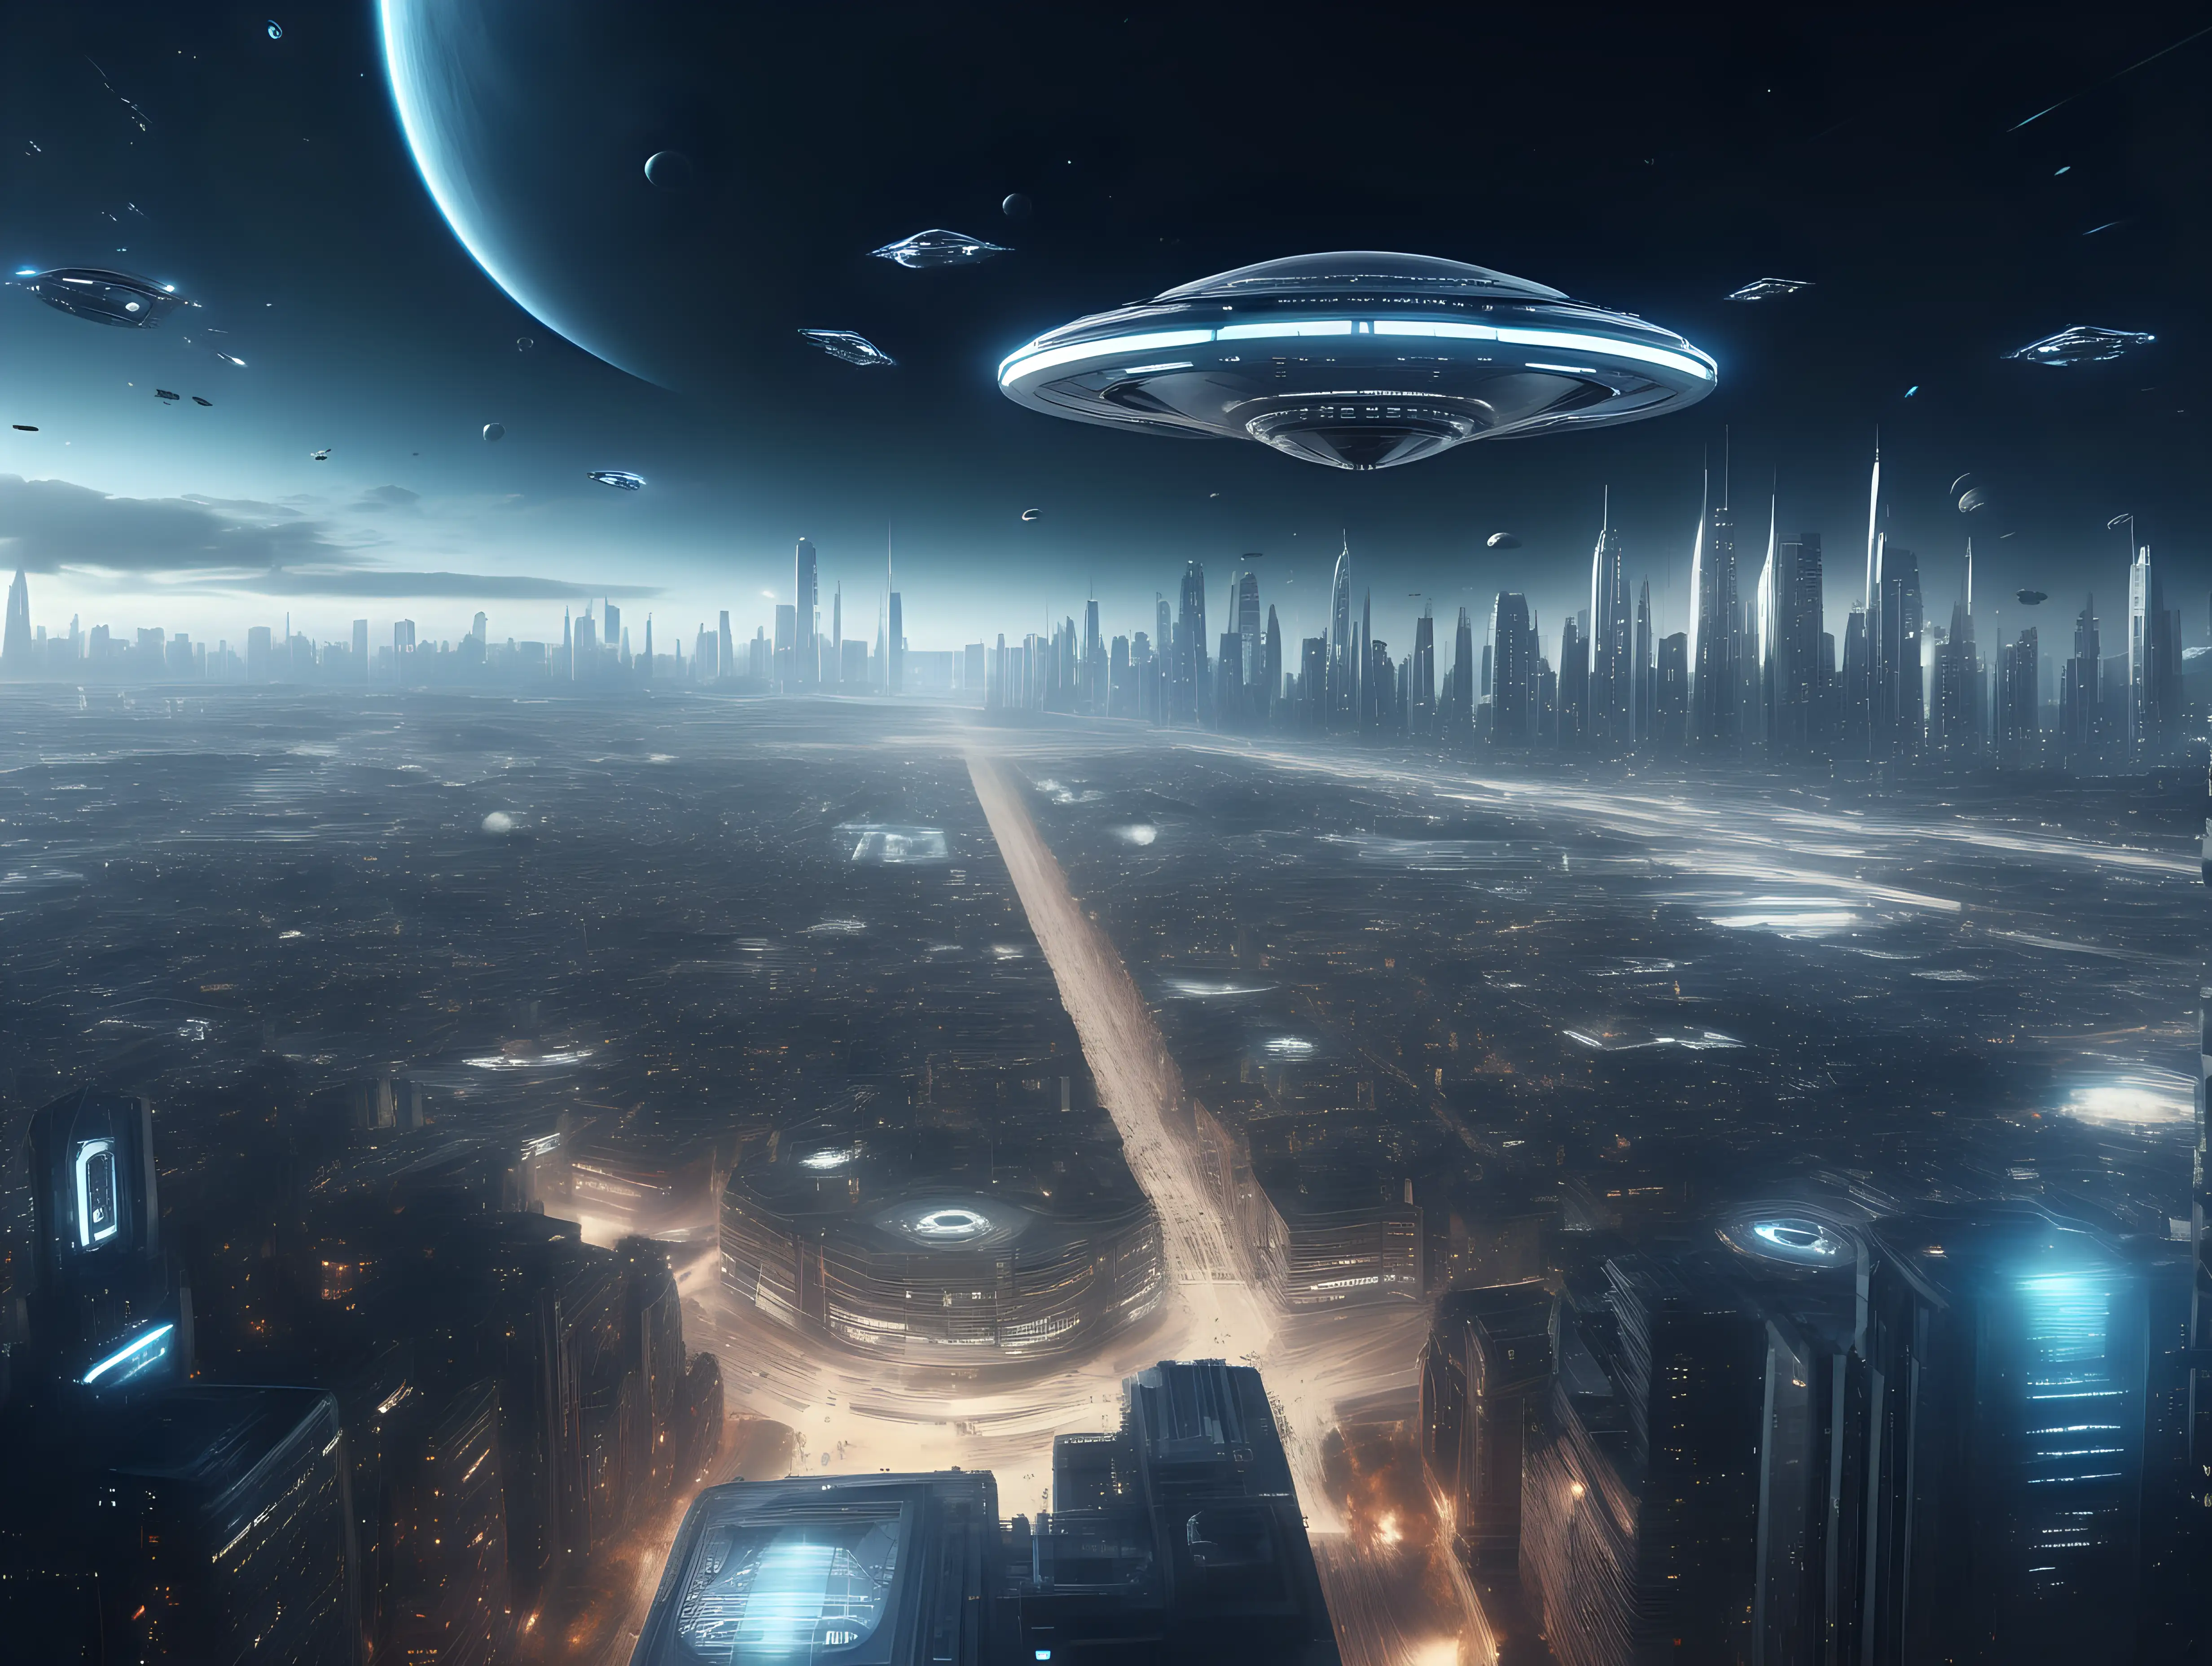 Futuristic Cityscape Illuminated Spaceship Hovers Above UltraRealistic Metropolis